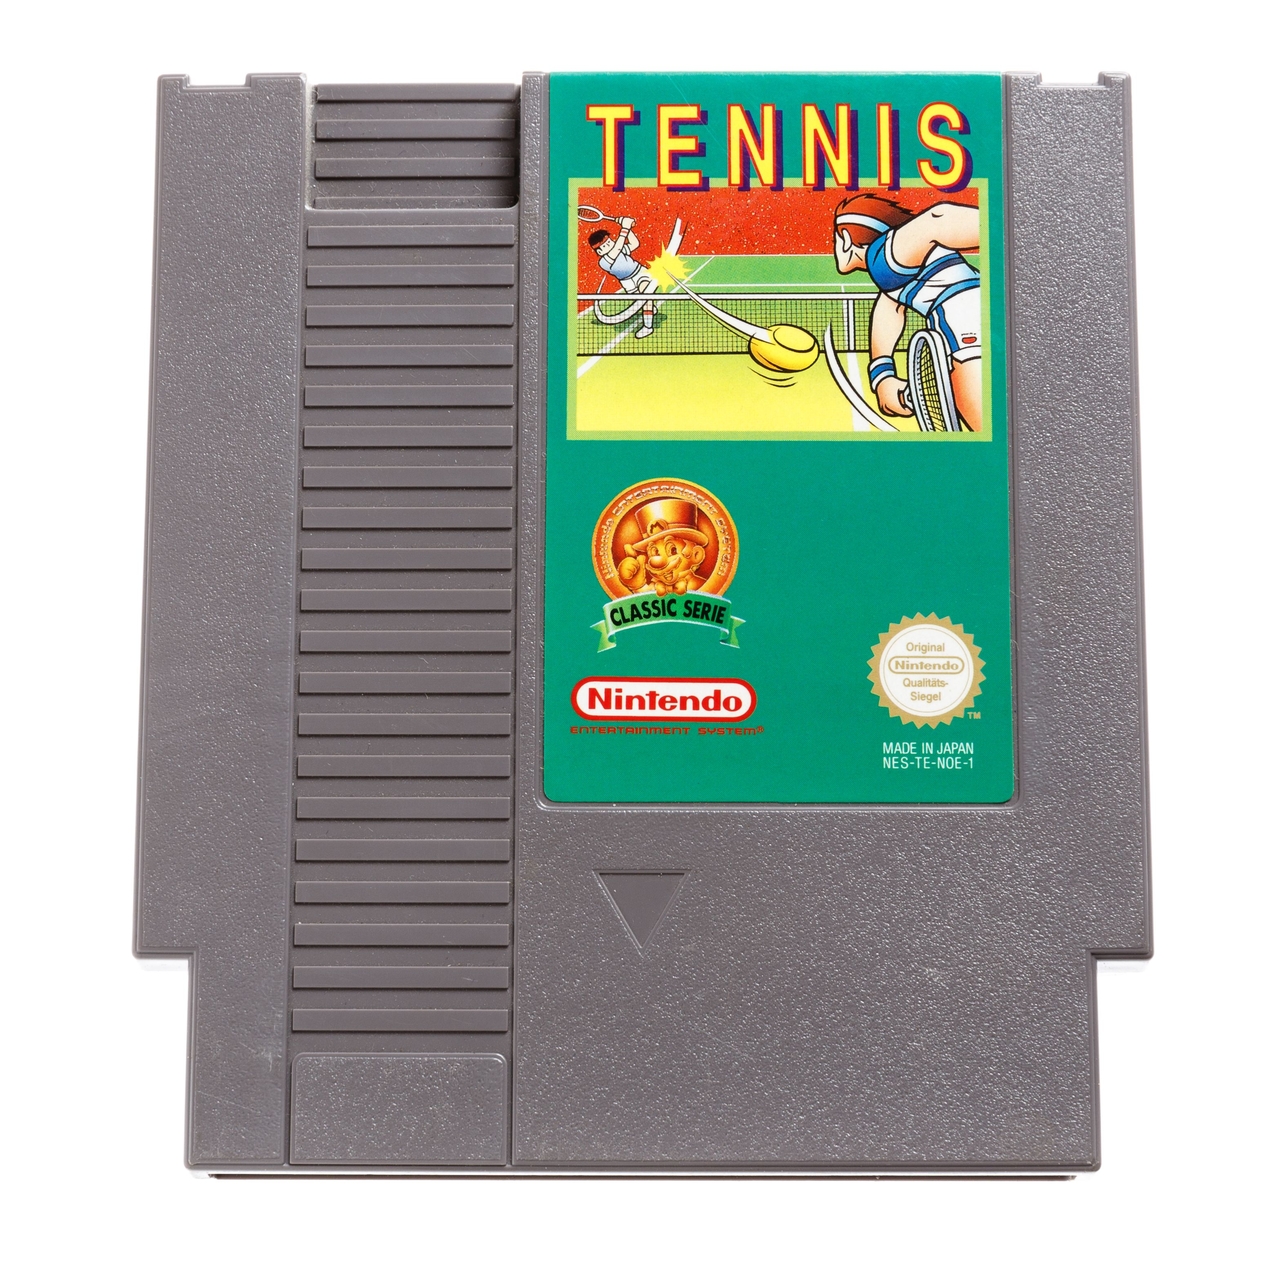 Tennis (Classics) | Nintendo NES Games | RetroNintendoKopen.nl